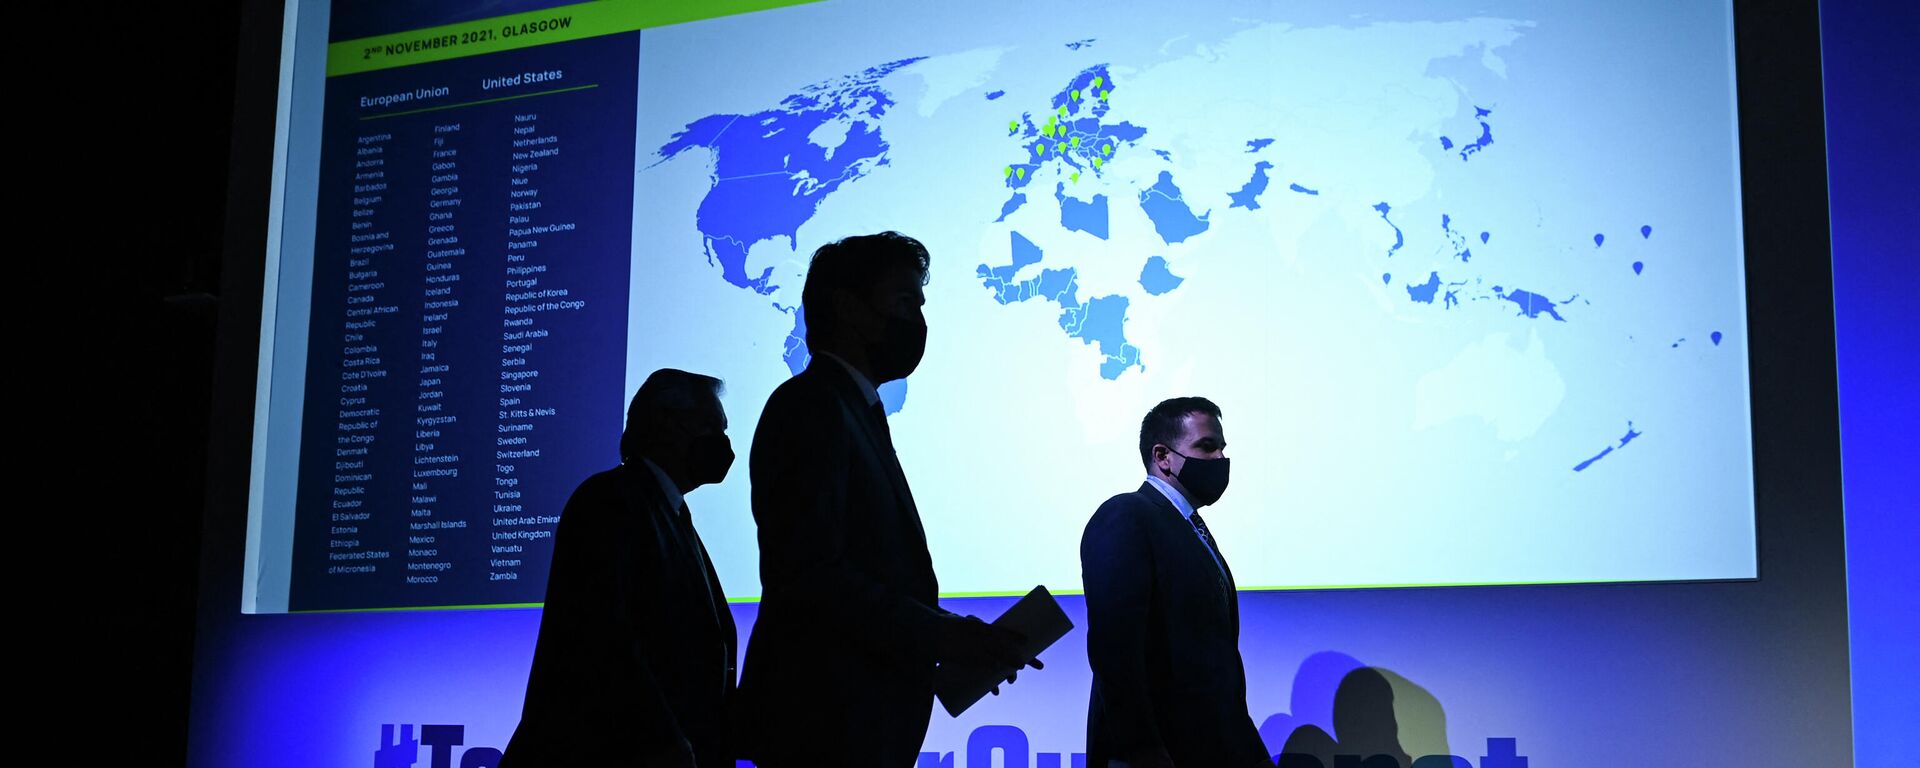 Члены делегаций прибывают на встречу в рамках Саммита мировых лидеров Конференции ООН по изменению климата COP26 в Глазго, Шотландия, 2 ноября 2021 года - Sputnik Азербайджан, 1920, 07.11.2021